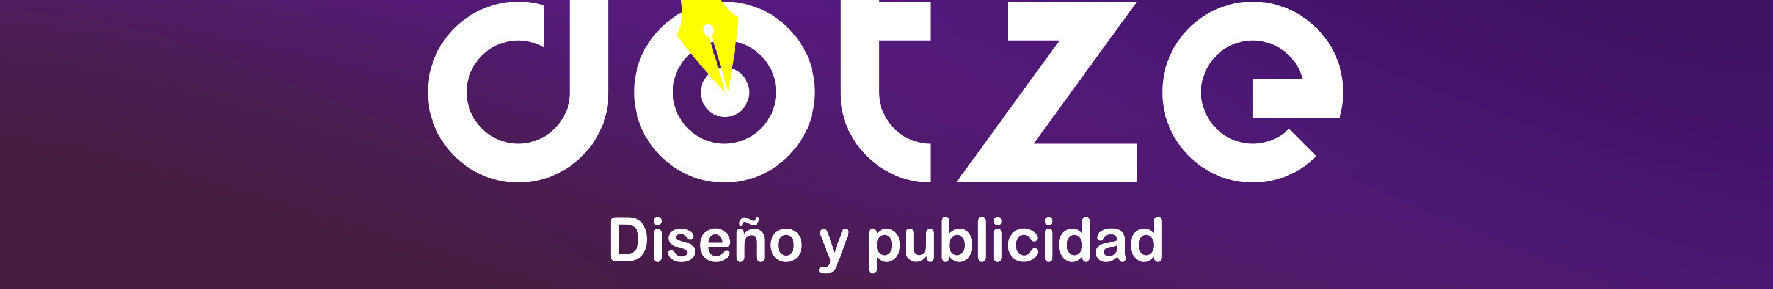 Camilo Cardozo's profile banner